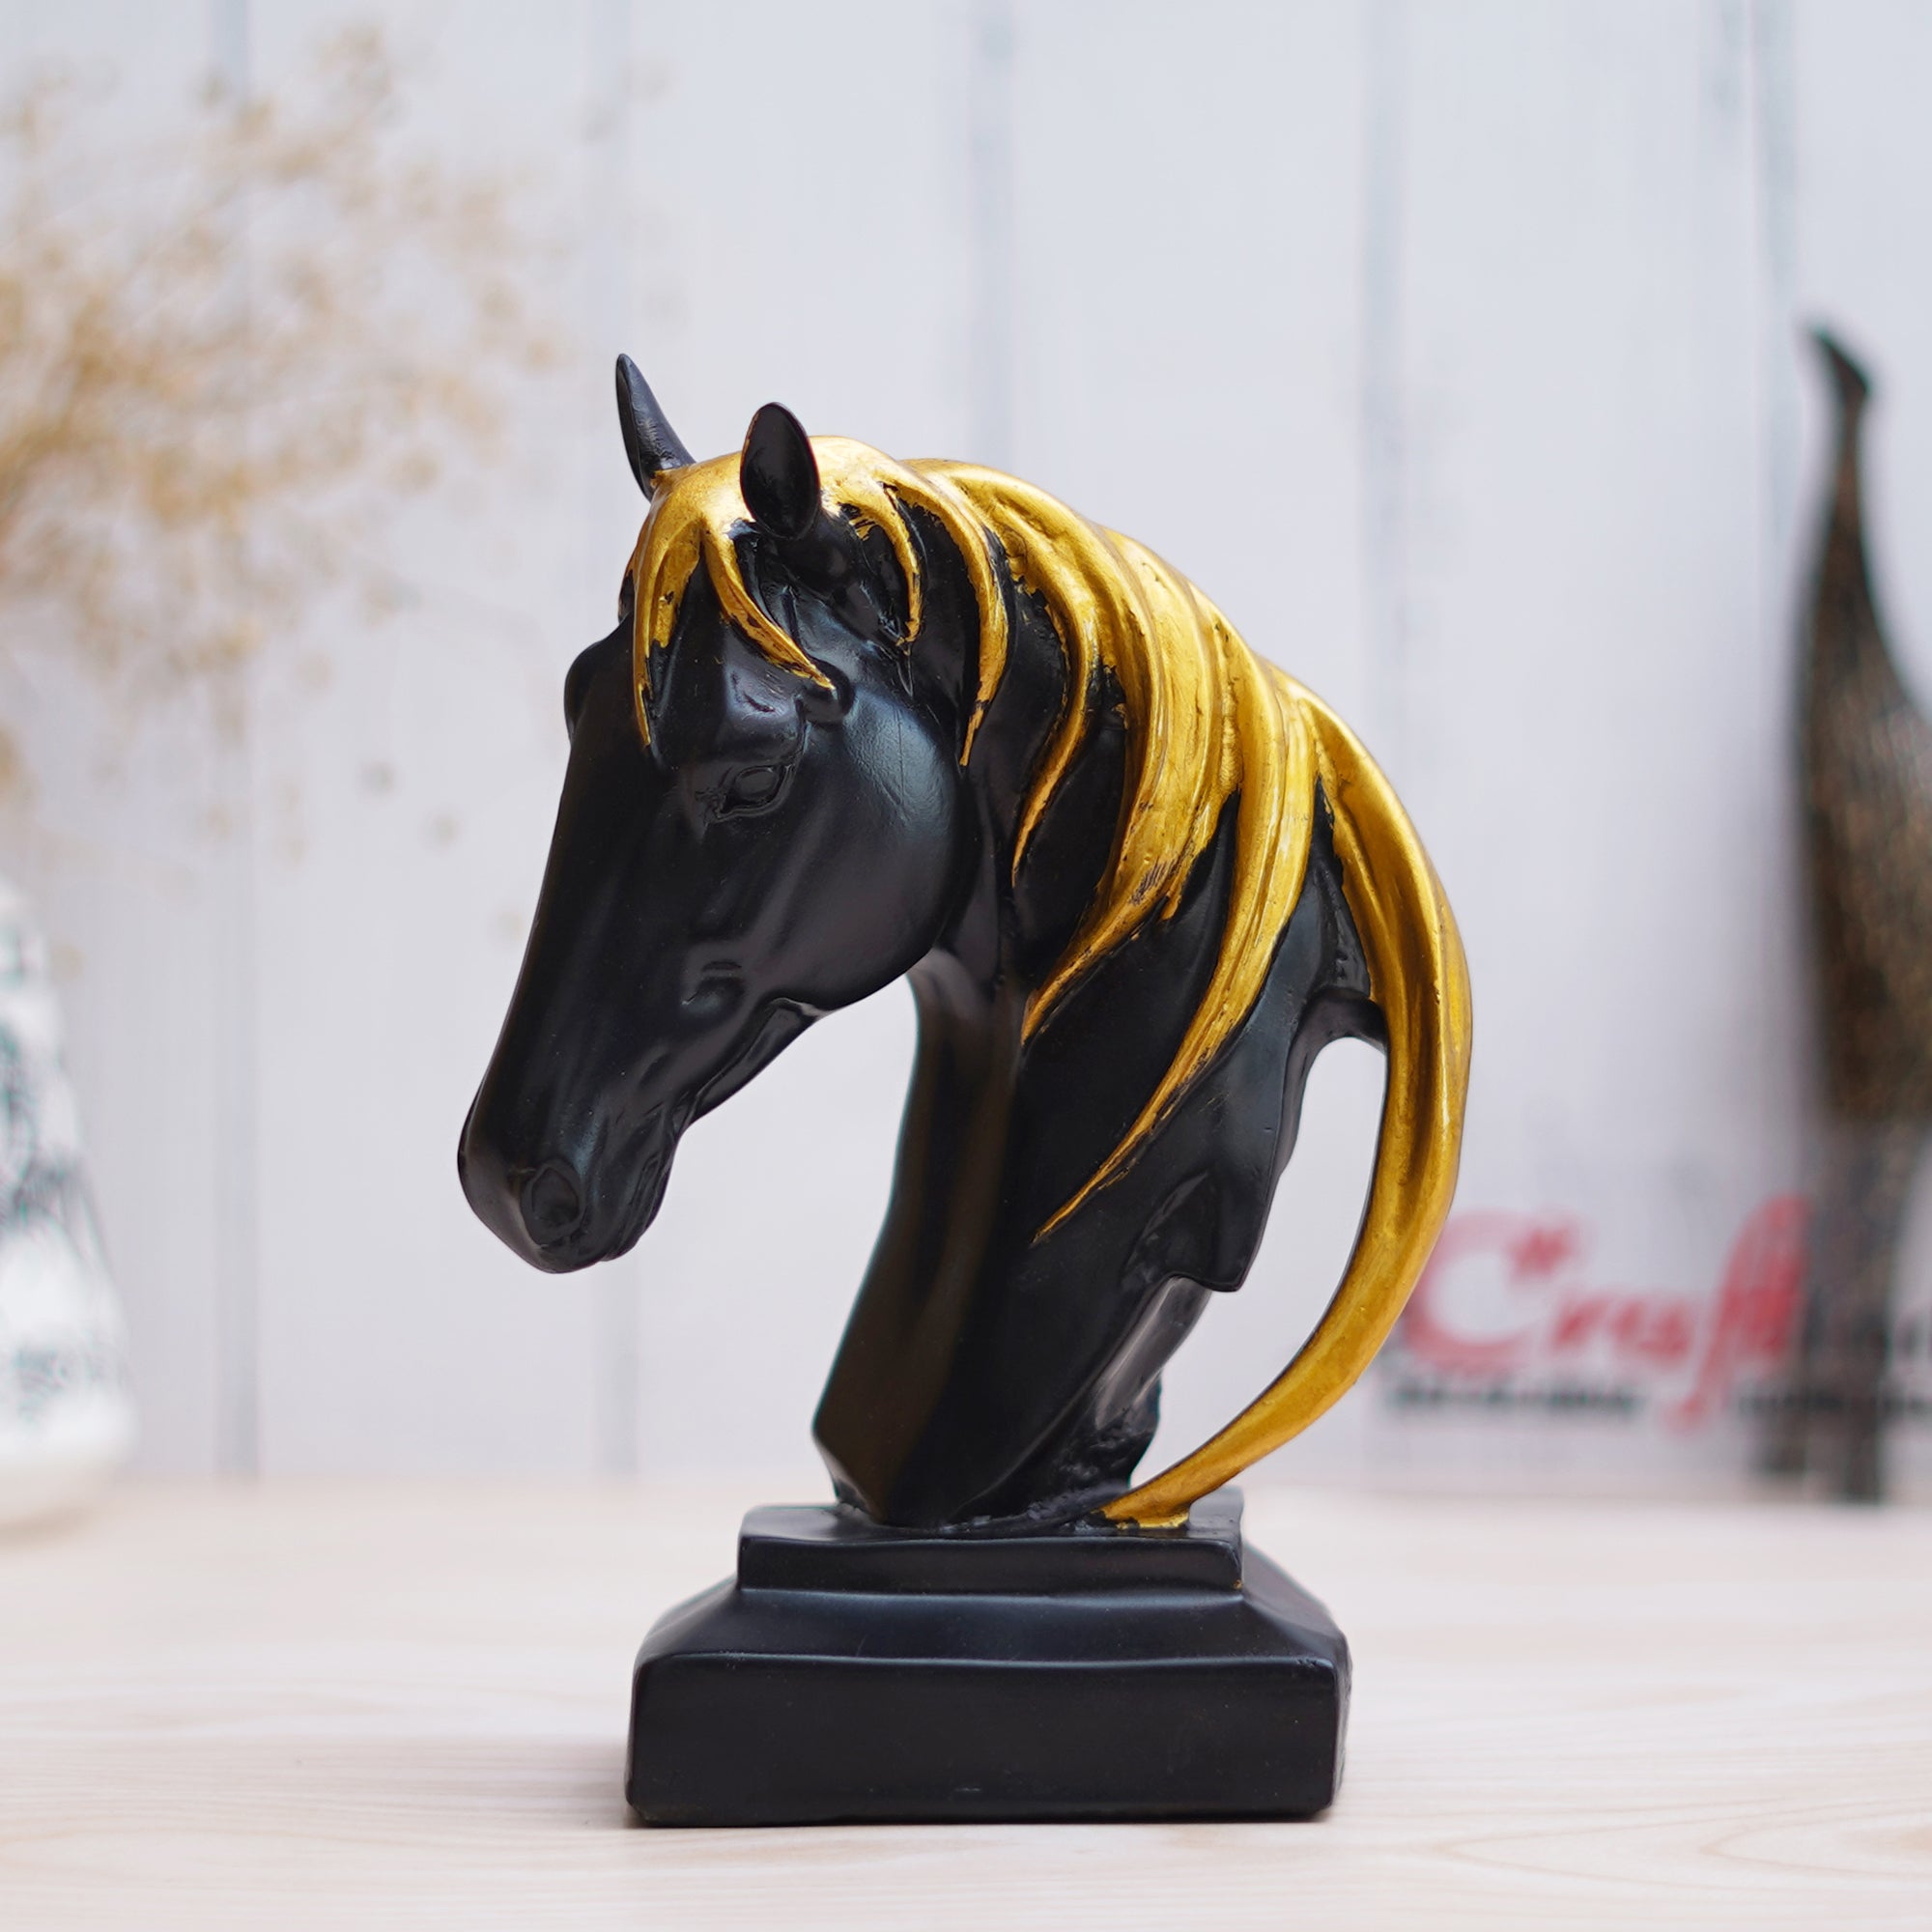 Black Horse Head Statue with Golden Hair Animal Figurine Showpiece 1